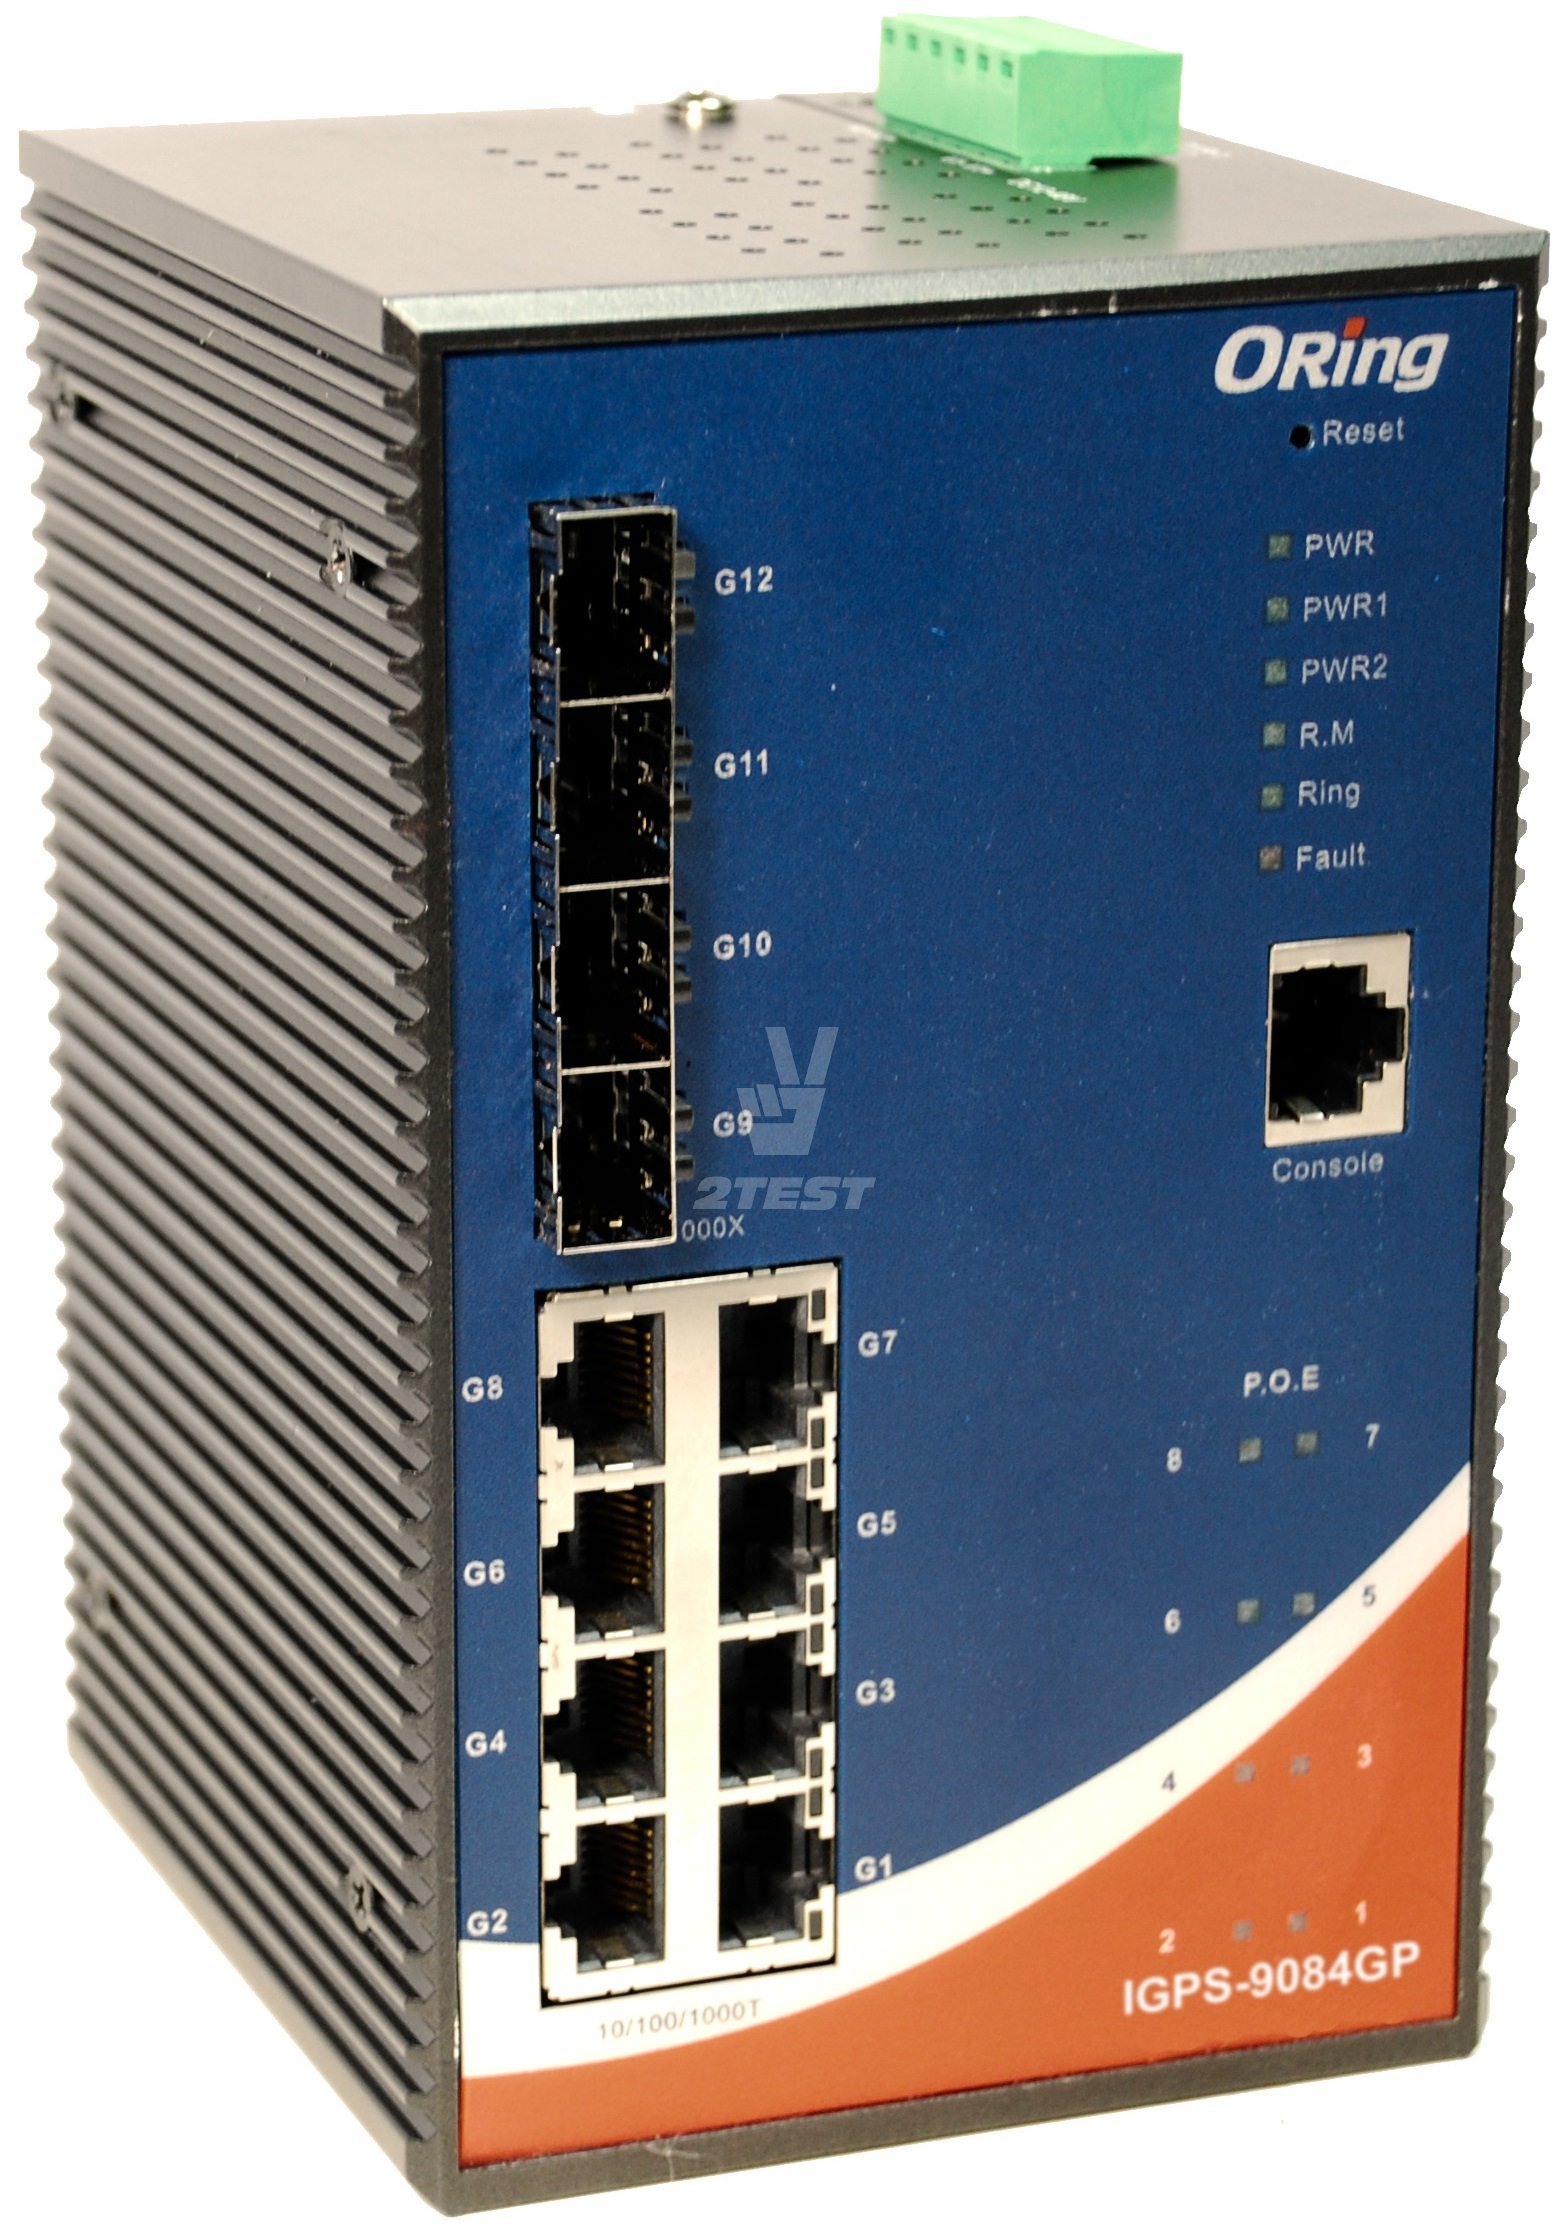 Поставка Промышленные управляемые 12-портовые Gigabit Ethernet коммутаторы ORing IGPS-9084GP с поддержкой PoE